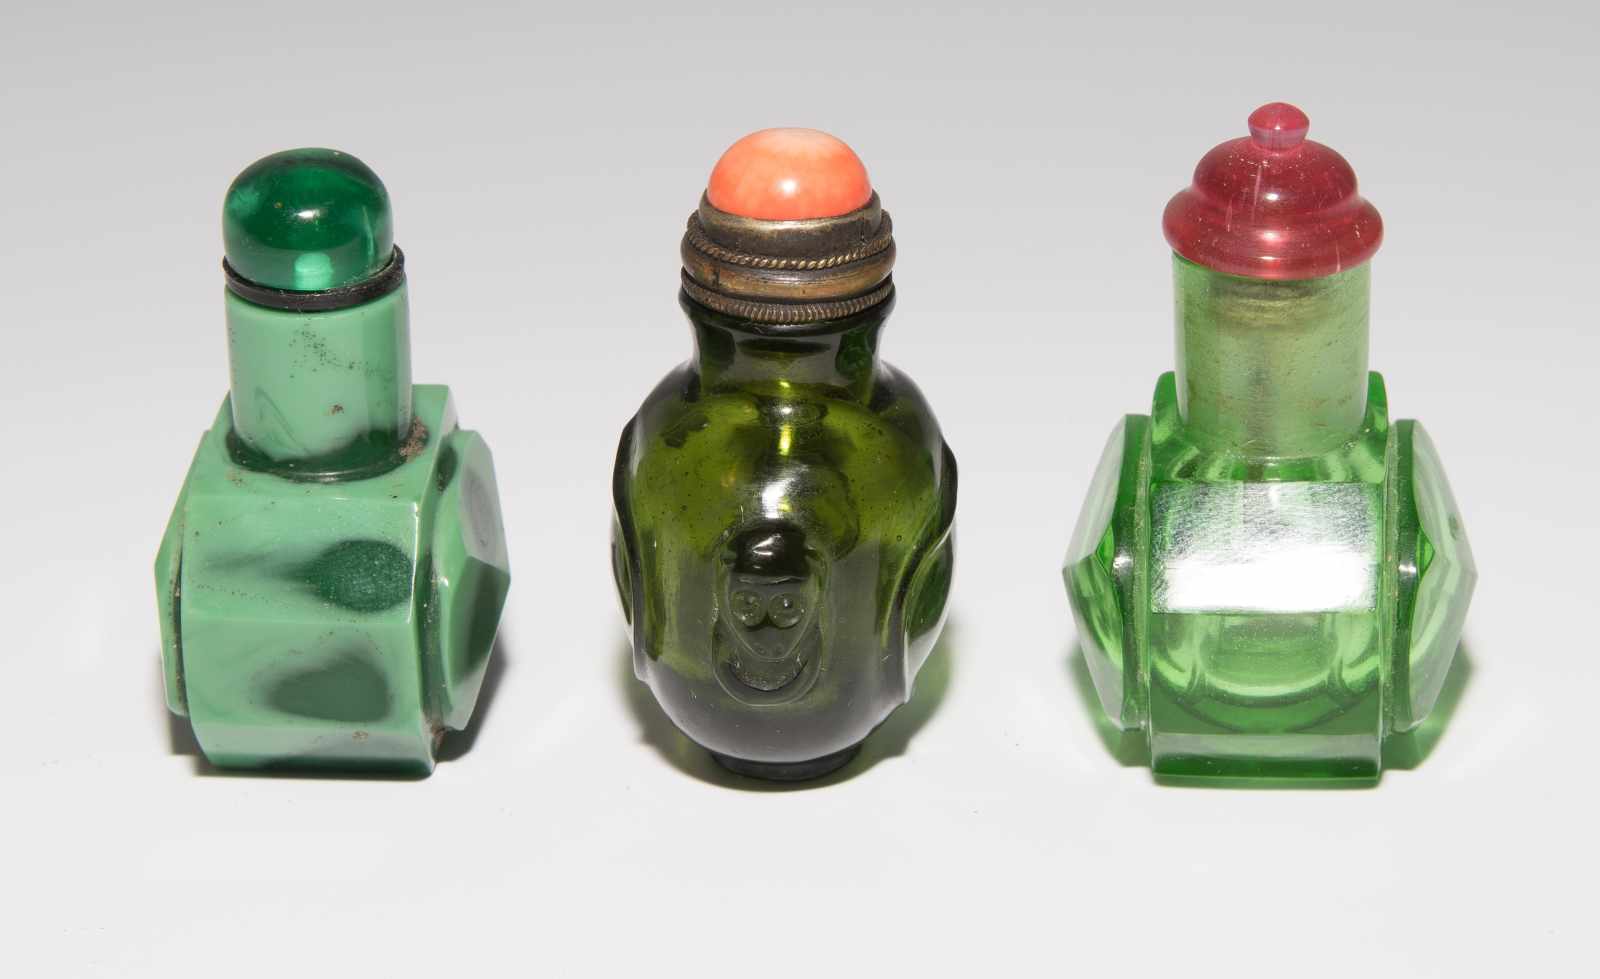 8 Snuff BottlesChina. Drei kleine Snuff Bottles aus transparentem Glas in verschiedenen Grüntonen; - Image 13 of 22